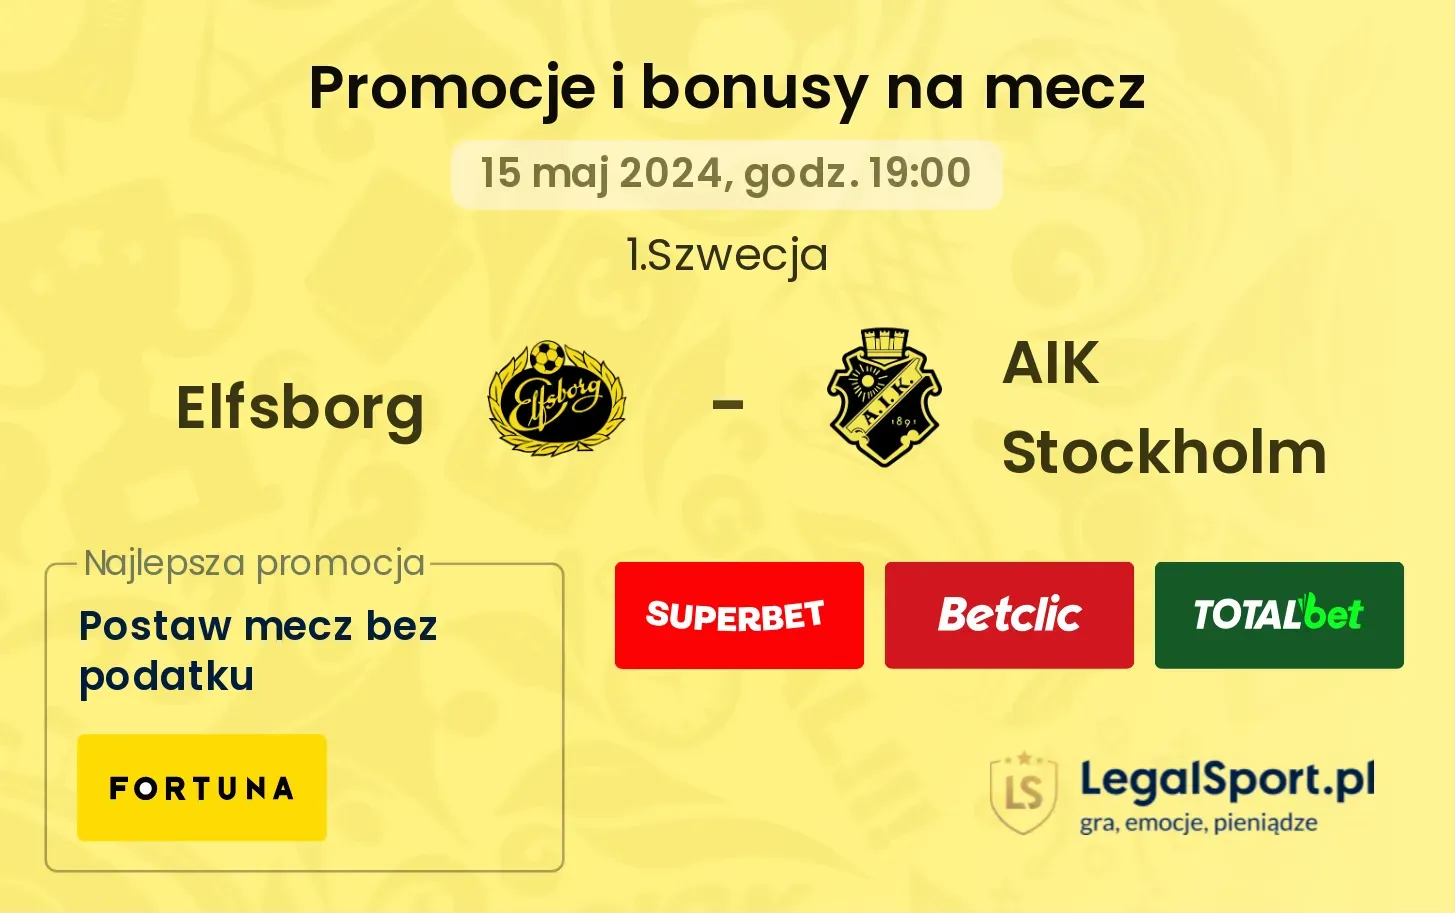 Elfsborg - AIK Stockholm promocje bonusy na mecz